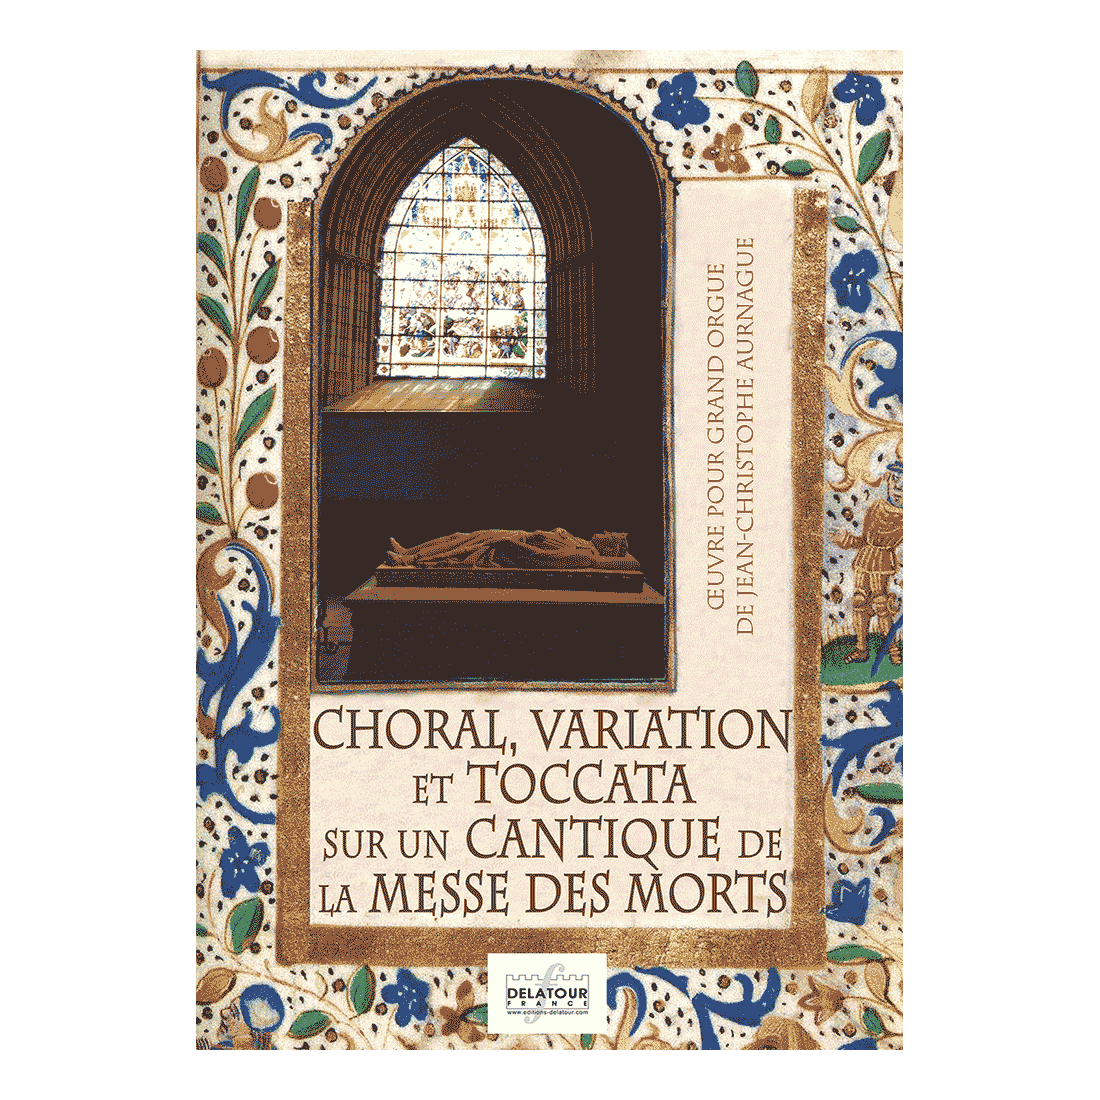 Choral, variation et toccata sur un cantique de la messe des morts für Orgel